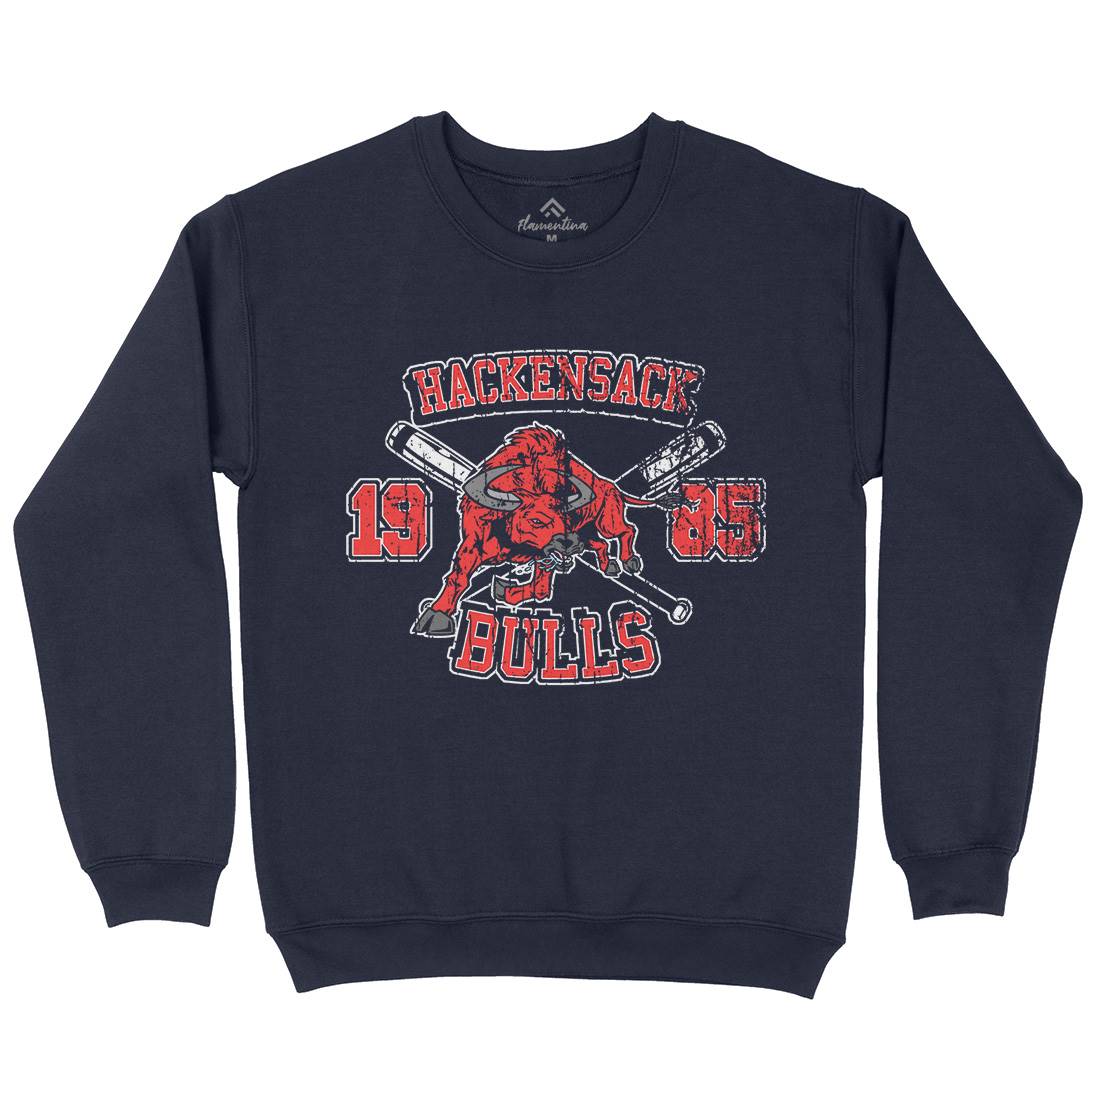 Hackensack Bulls Mens Crew Neck Sweatshirt Sport D121